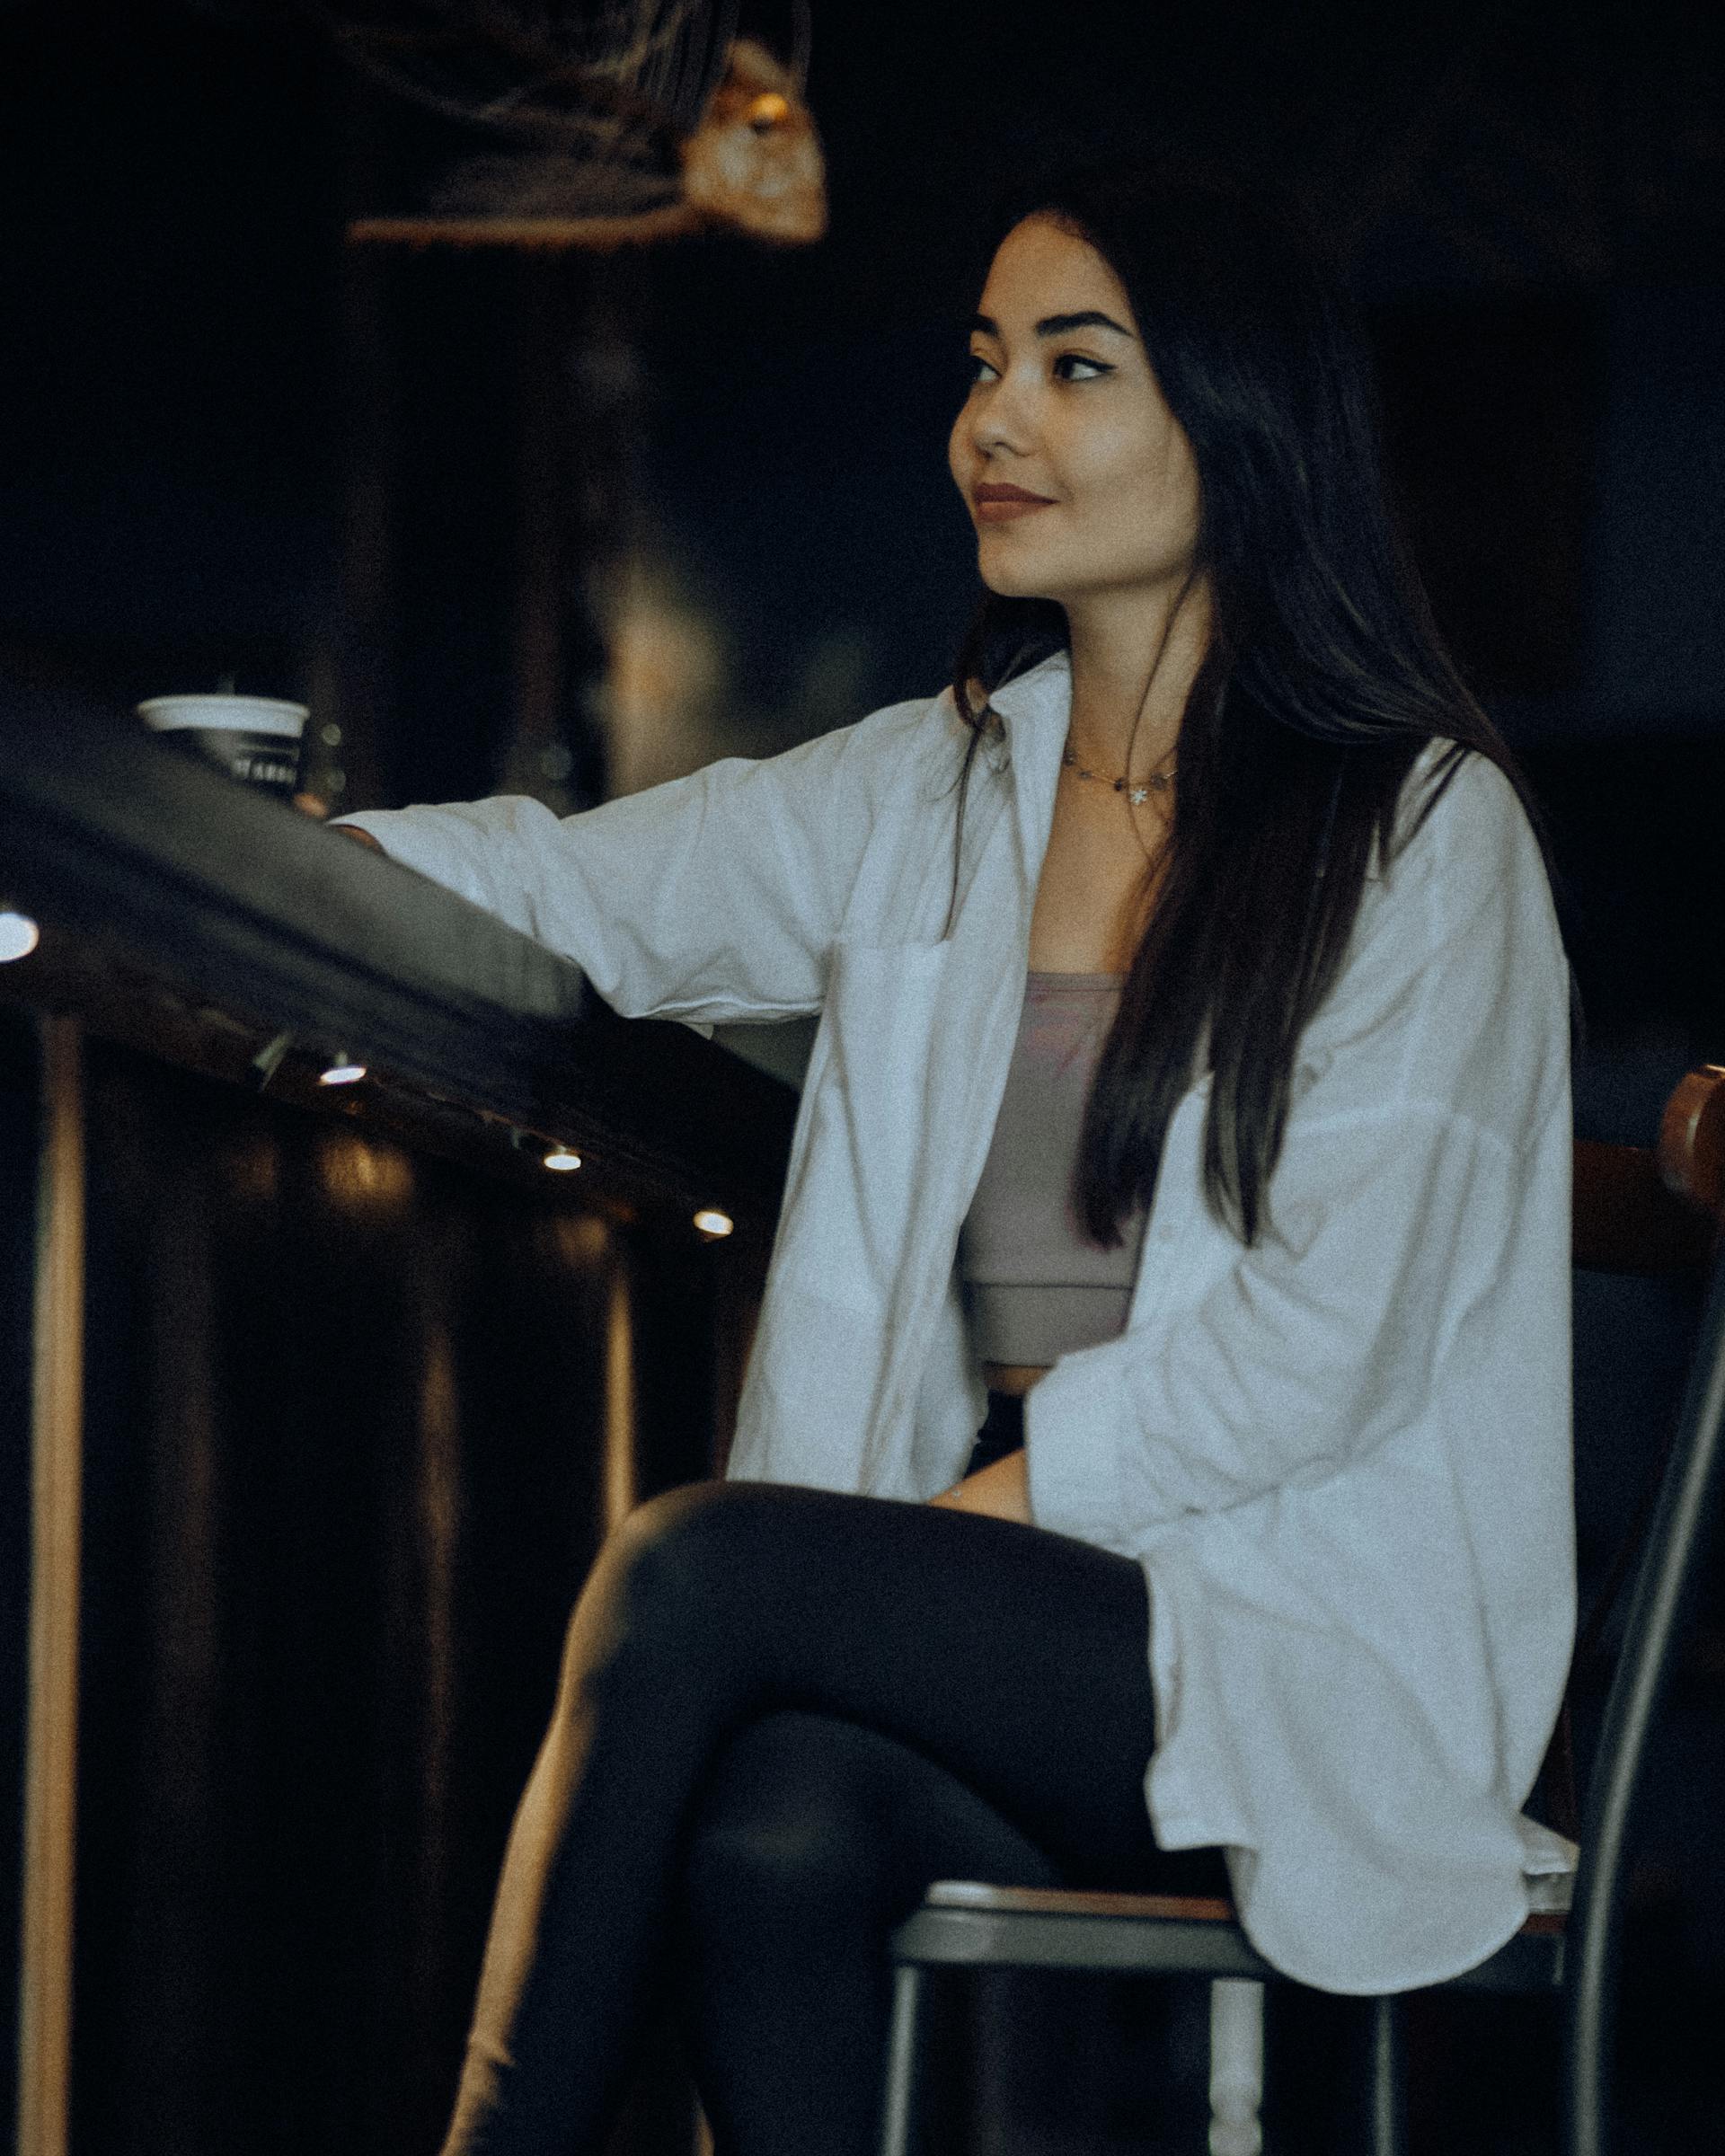 Une femme assise dans un bar | Source : Pexels